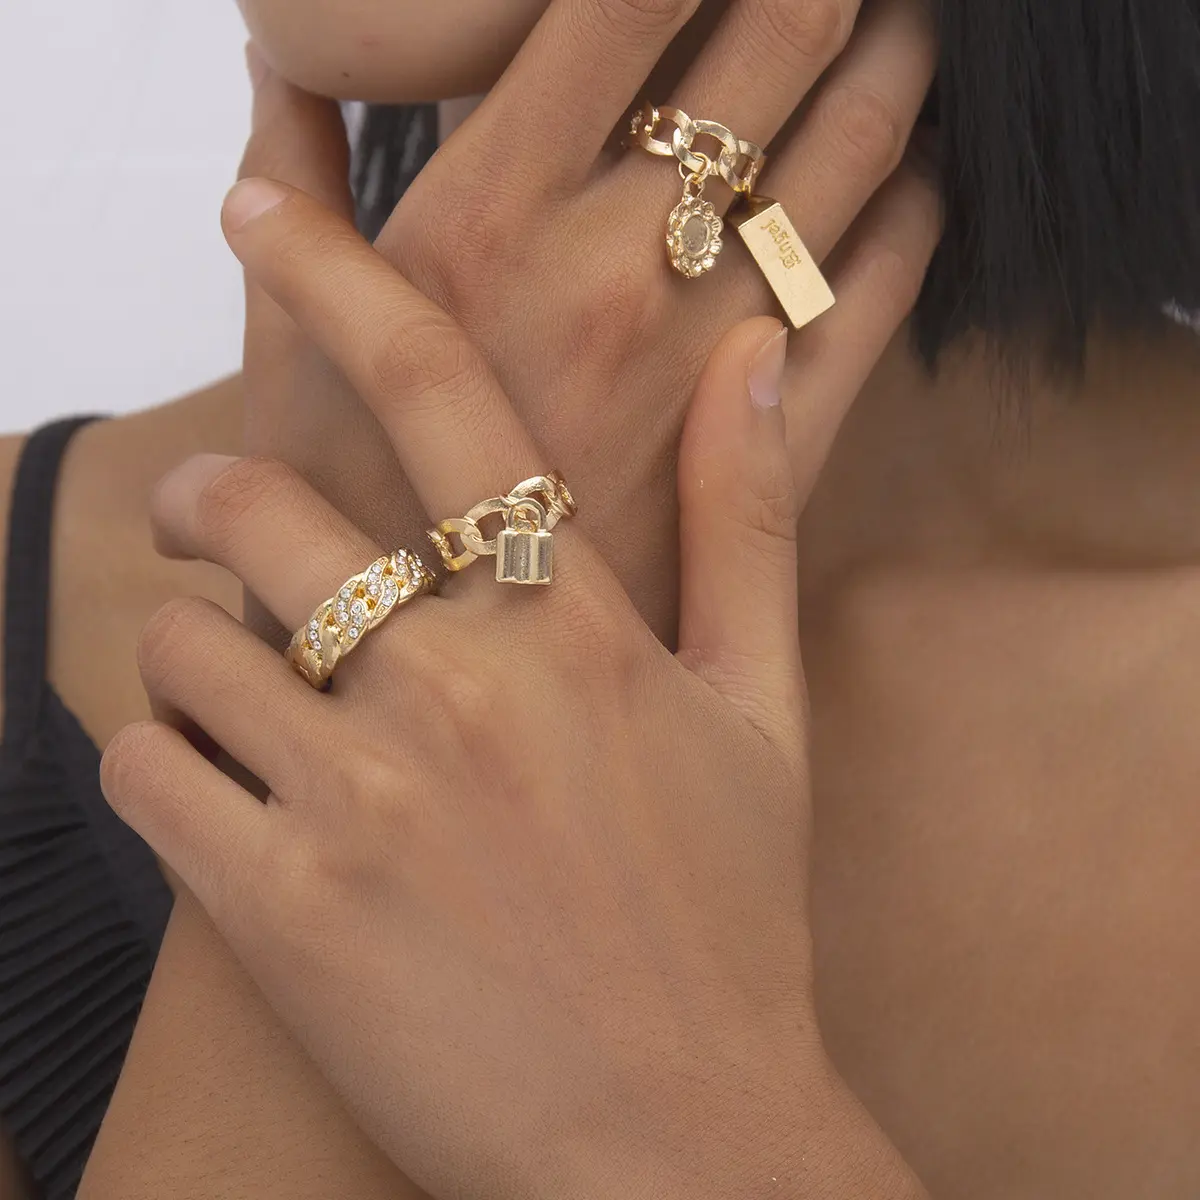 4 PCS Sets Vintage Kette Strass Ringe Personalisierte Gold Farbe Schriftzug Ring Frauen Mode Schmuck Geometrische Platz Ring